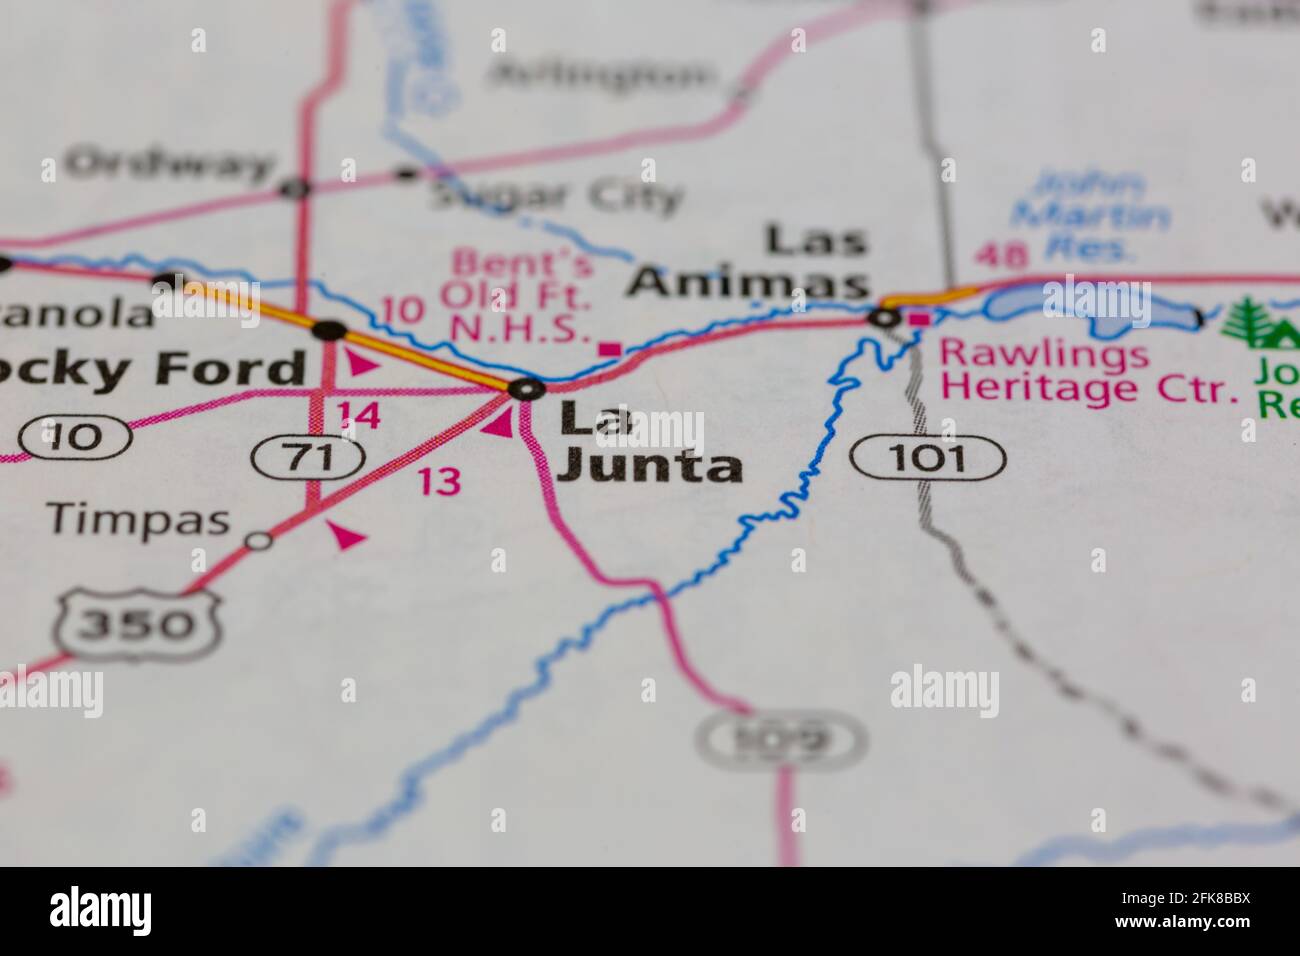 La Junta Colorado USA montré sur une carte de géographie ou carte routière Banque D'Images